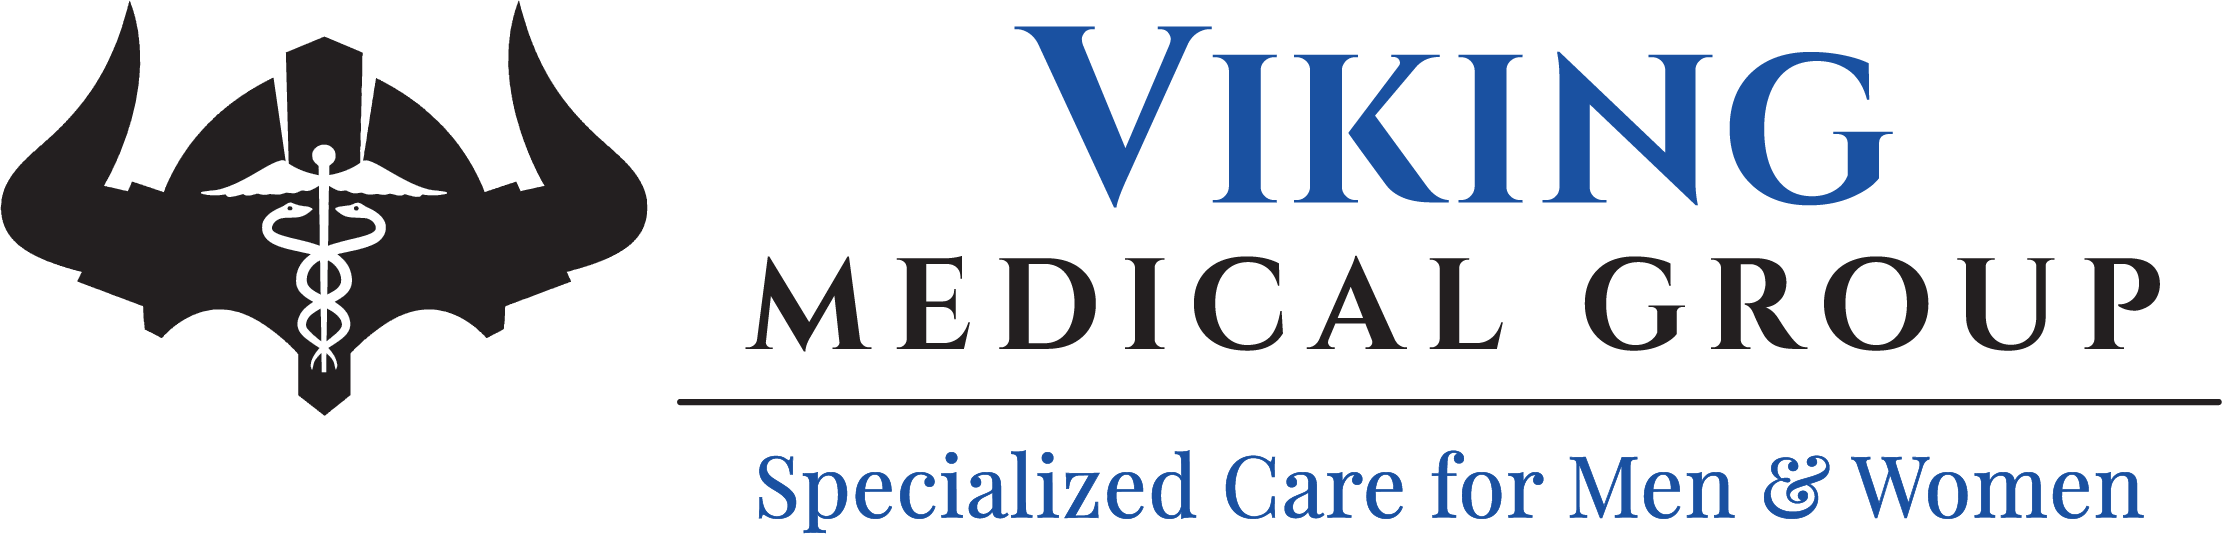 Viking Medical Group Logo